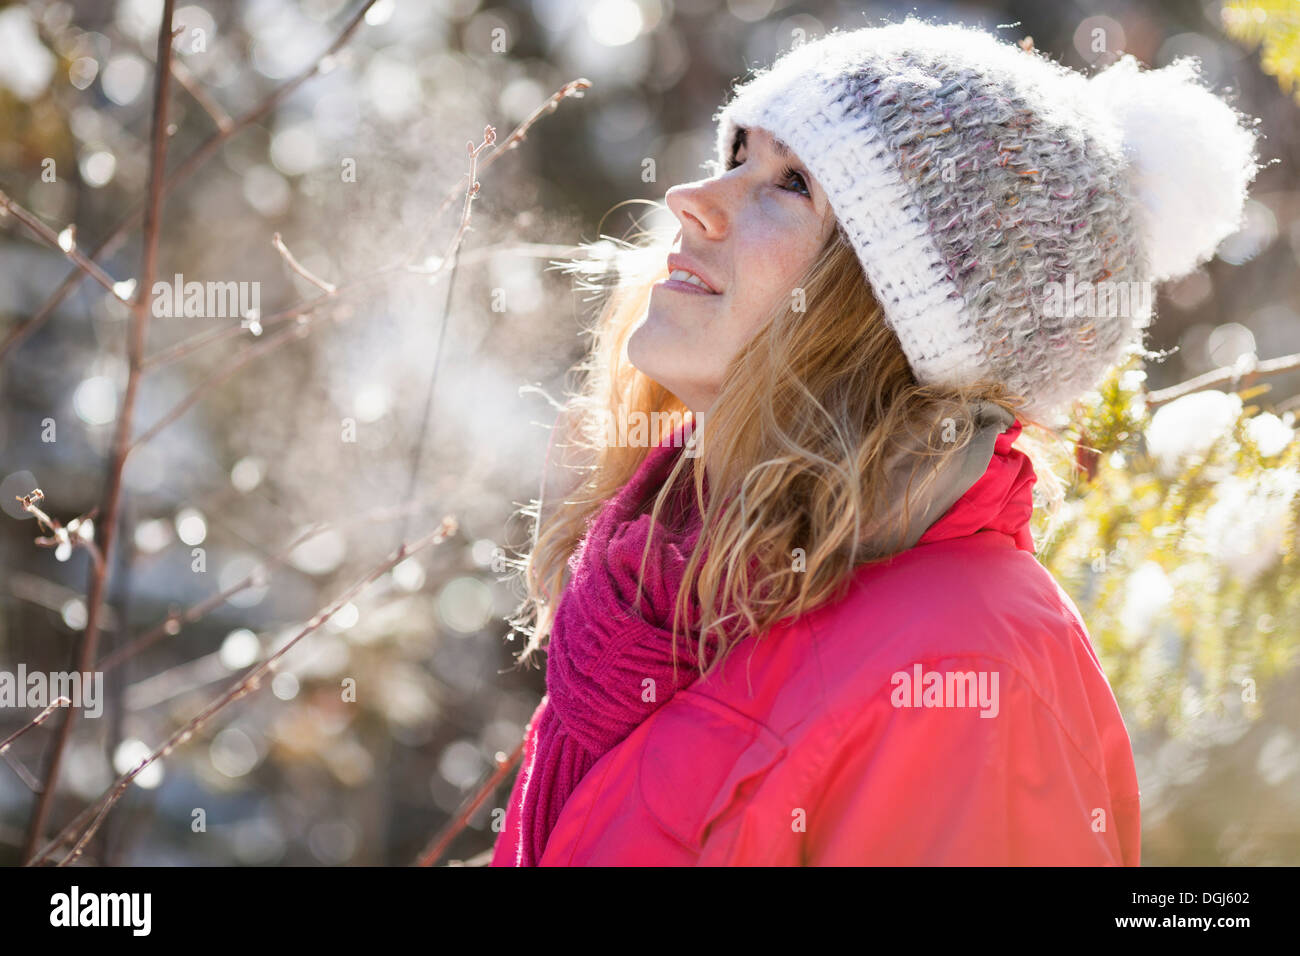 Jeune adulte femme parmi les branches d'arbres couverts de neige Banque D'Images